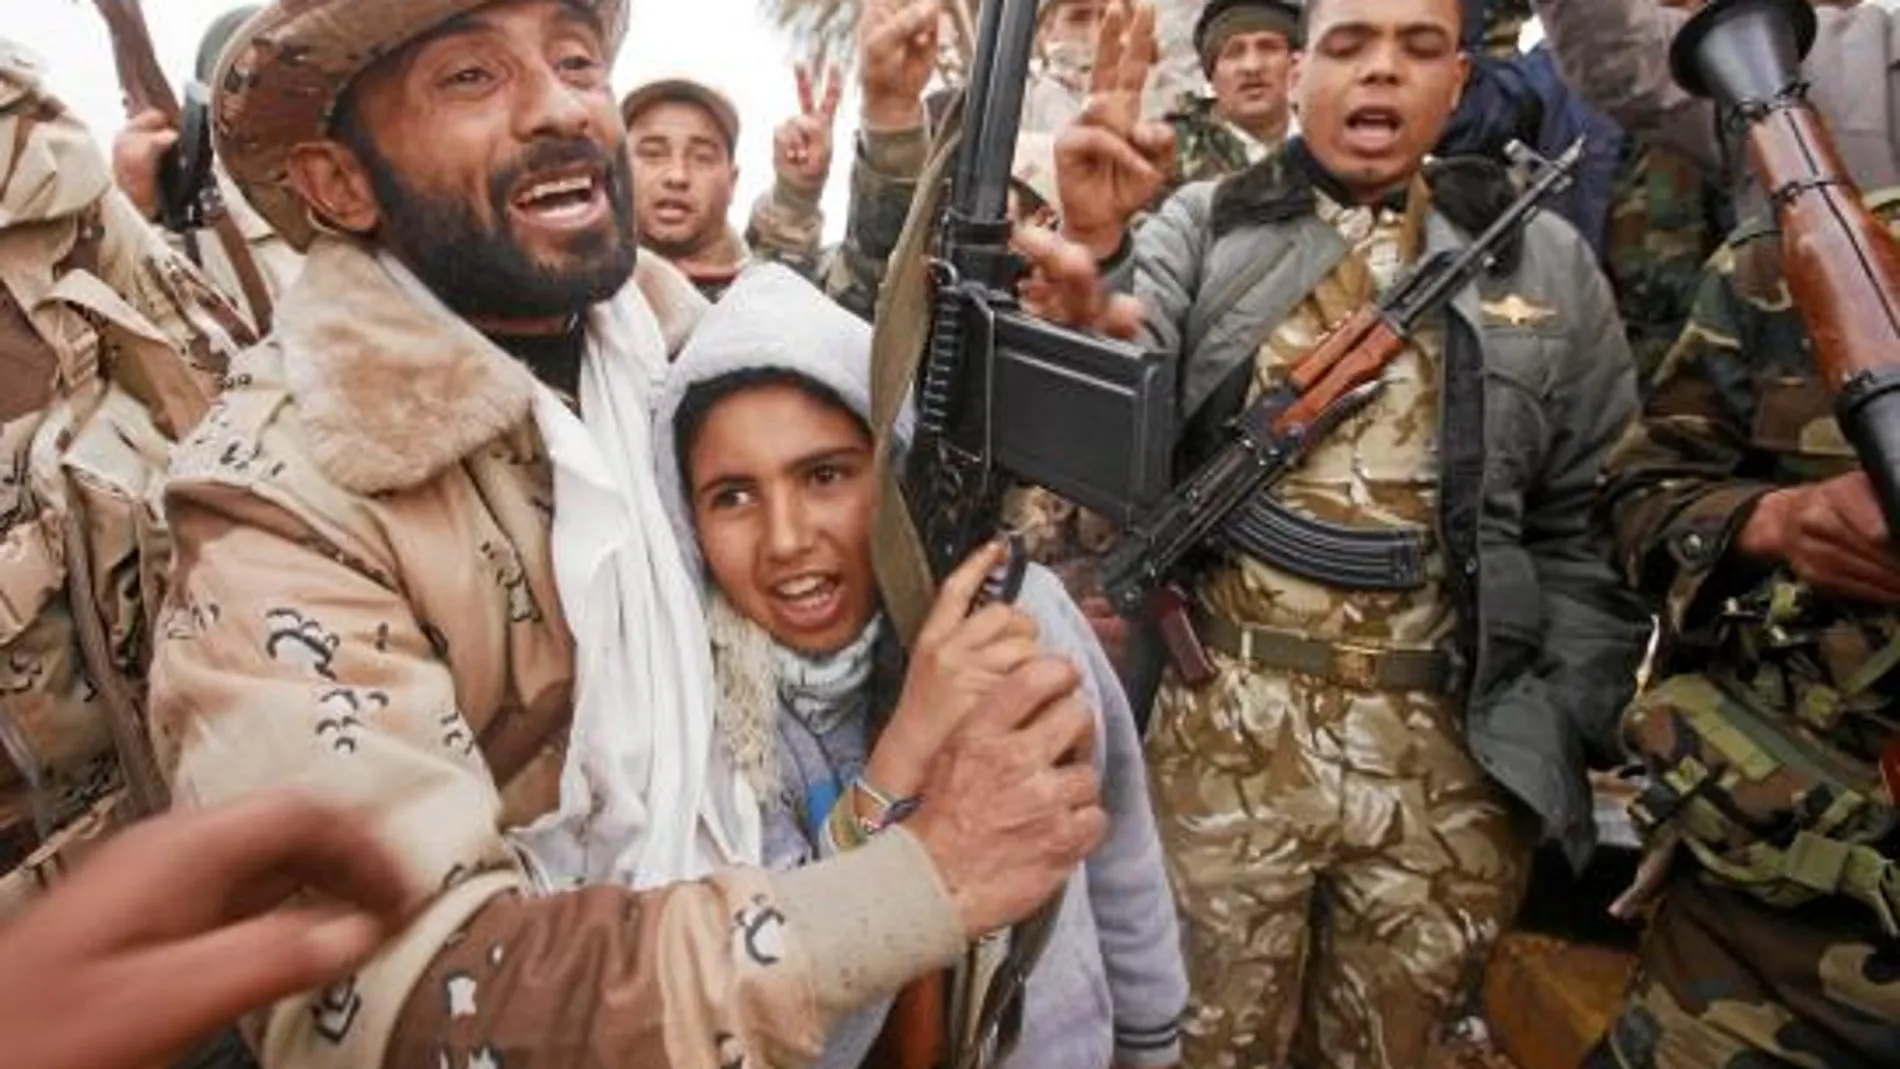 Rebeldes y ex soldados de Gadafi celebran juntos la toma de un acuartelamiento en Bengasi